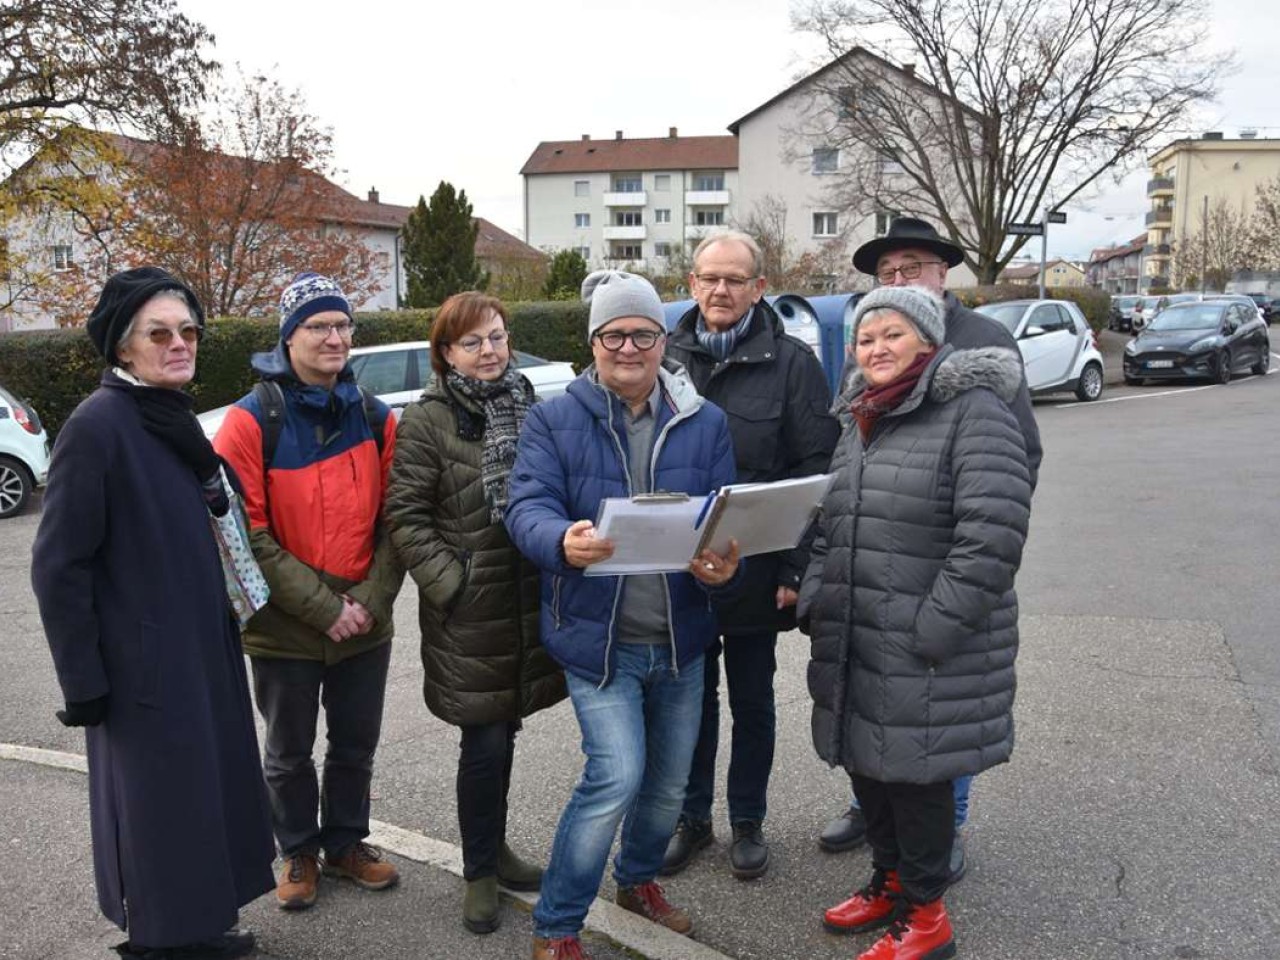 Städtebau in Untertürkheim: Protest gegen Neubau in Sattelstraße